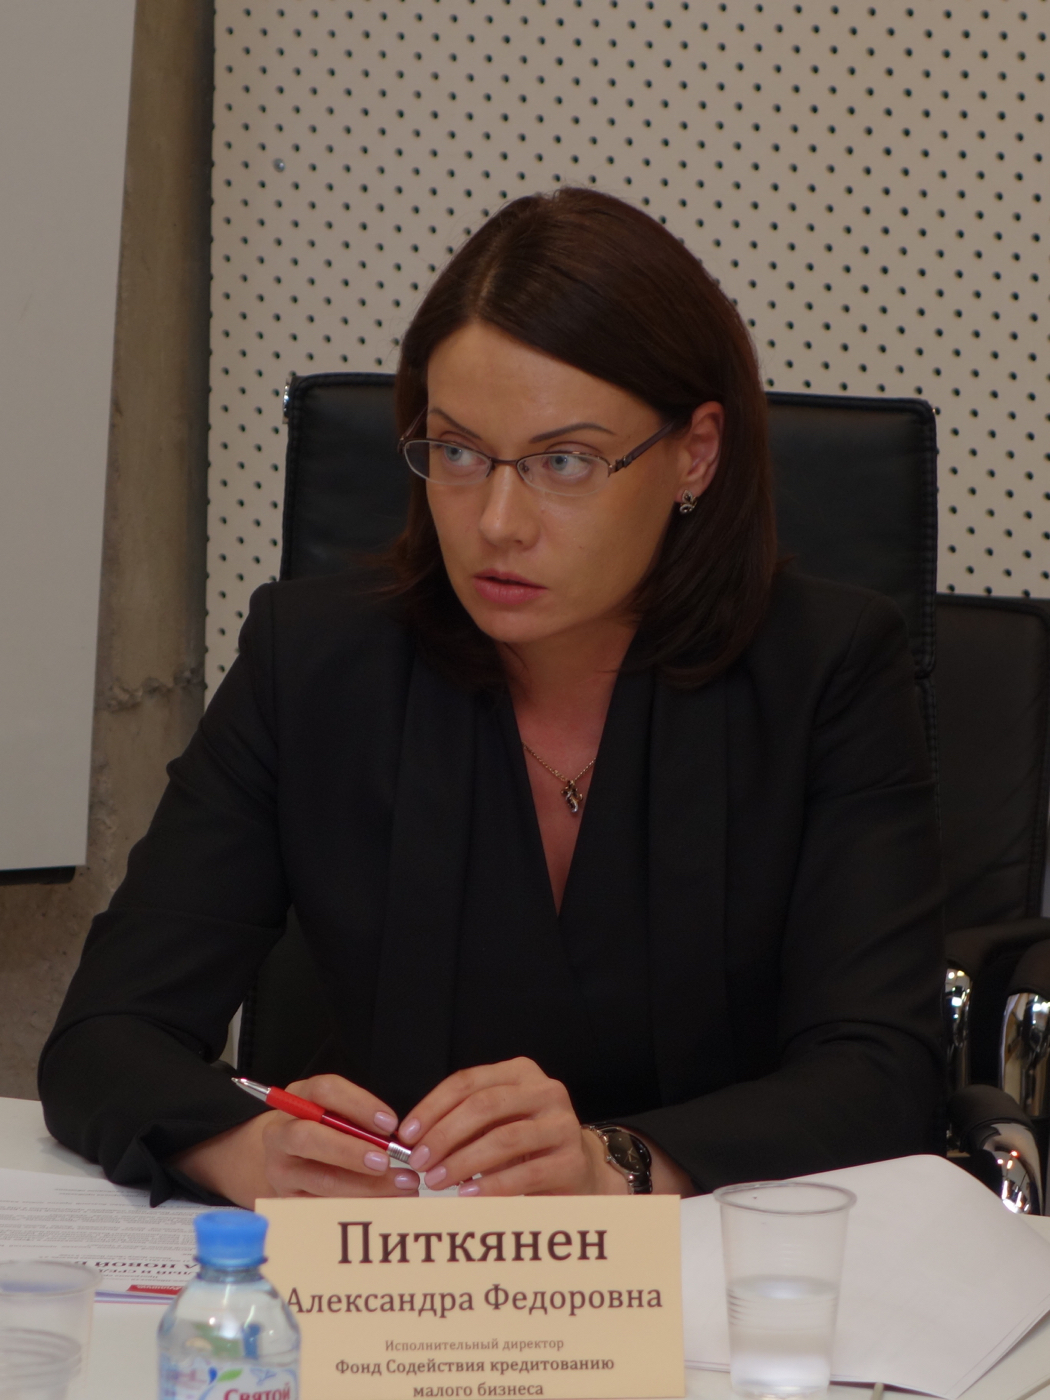 Александра Федоровна Питкянен — исполнительный директор Фонда Содействия кредитованию малого бизнеса